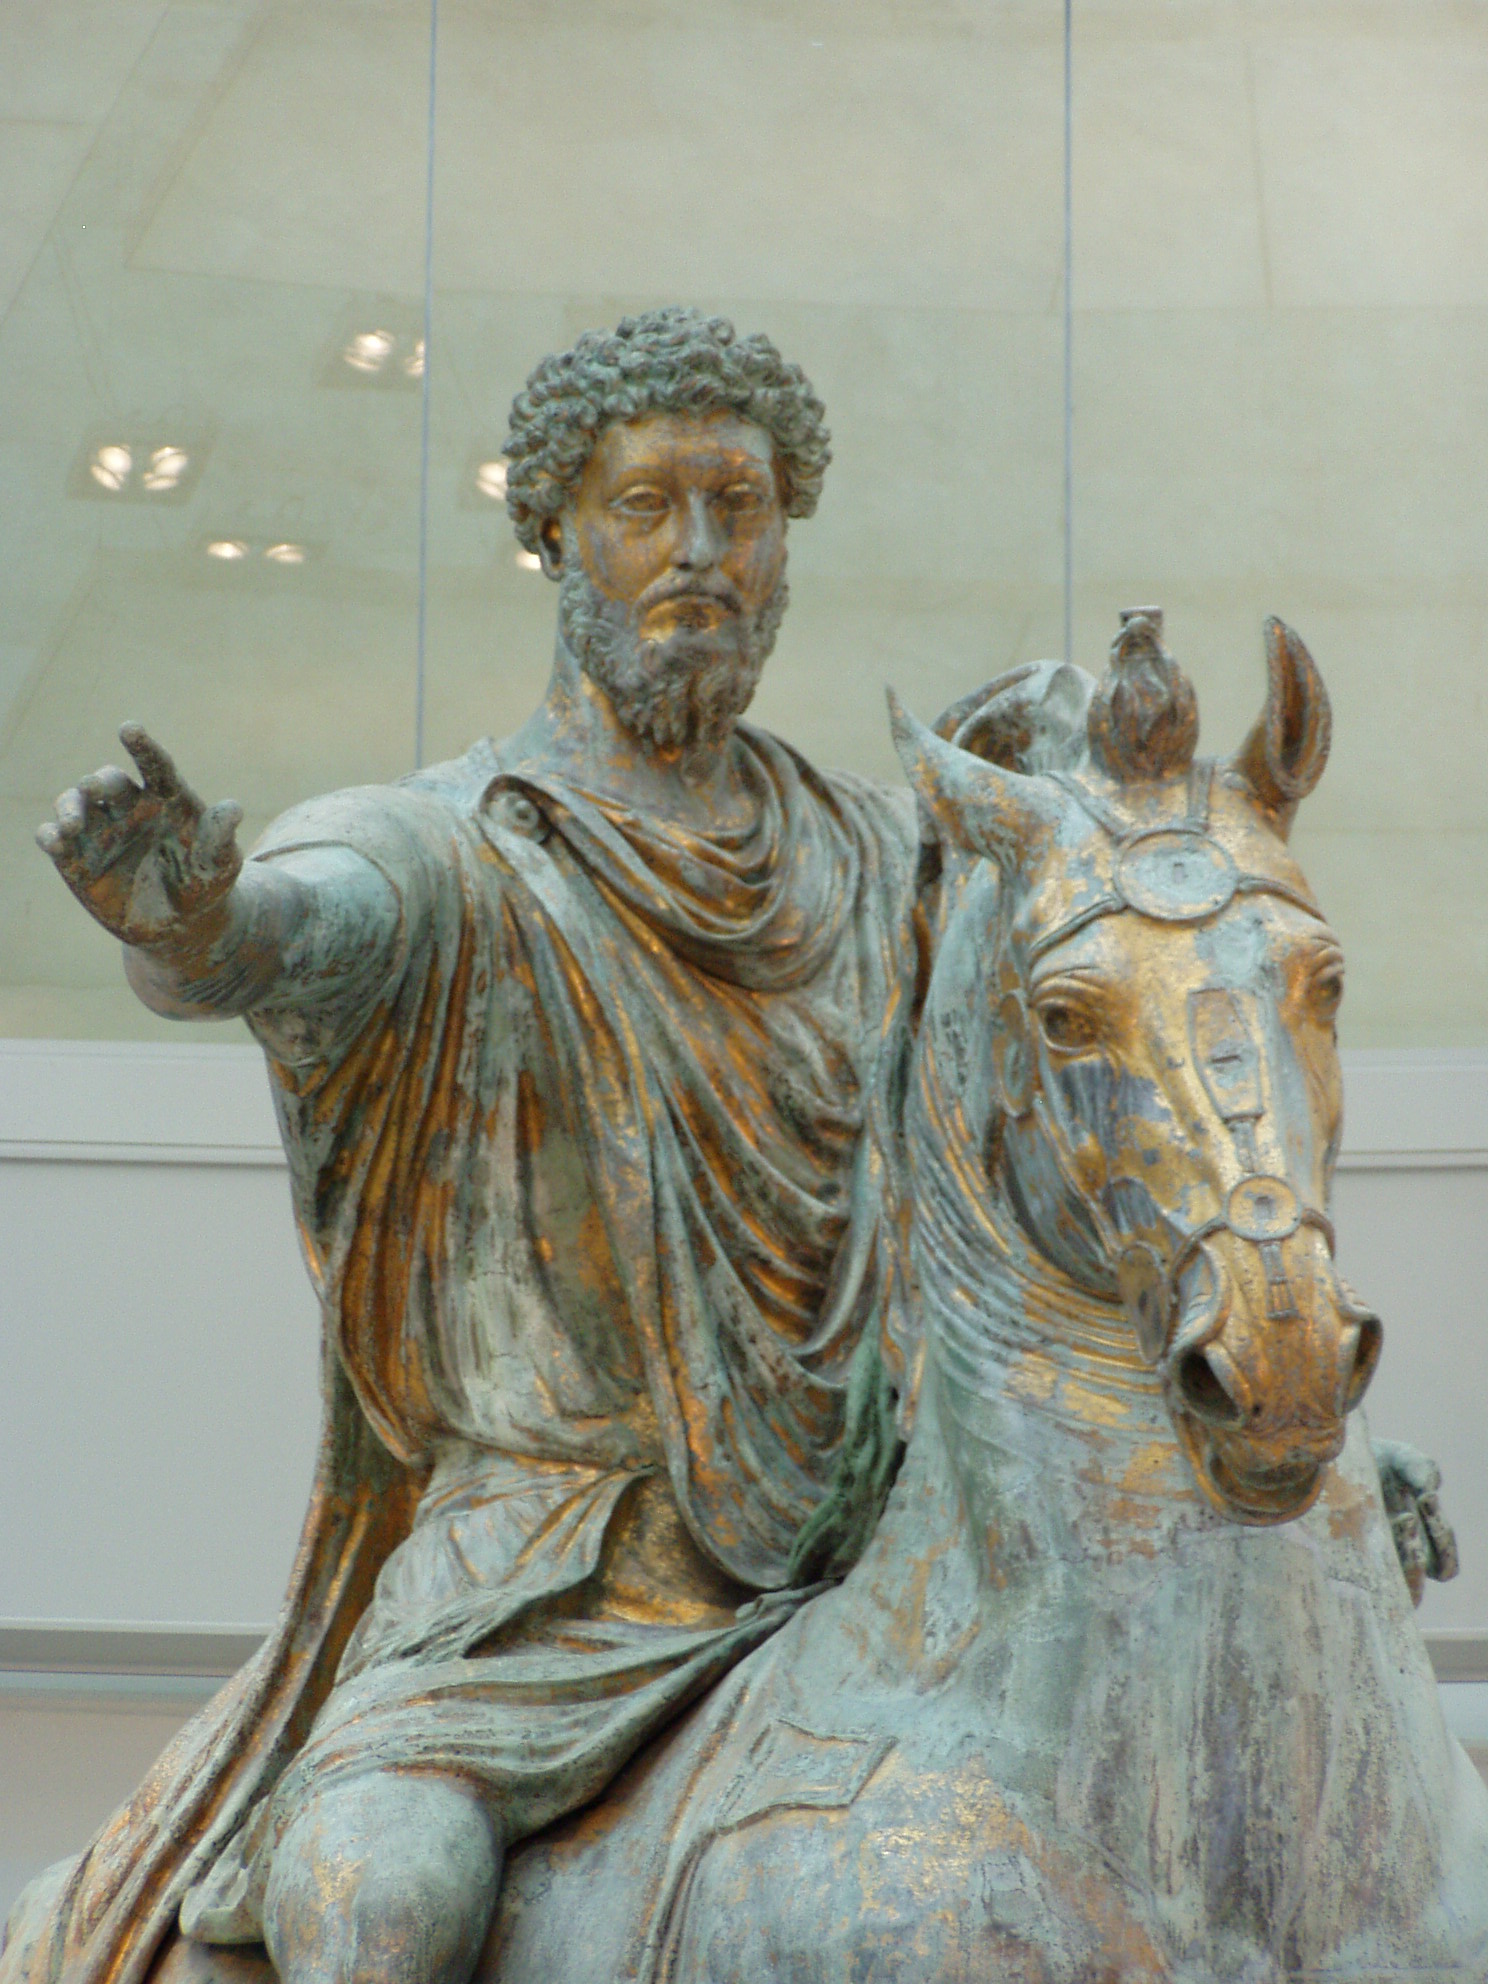    (. Marcus Aurelius Antoninus)